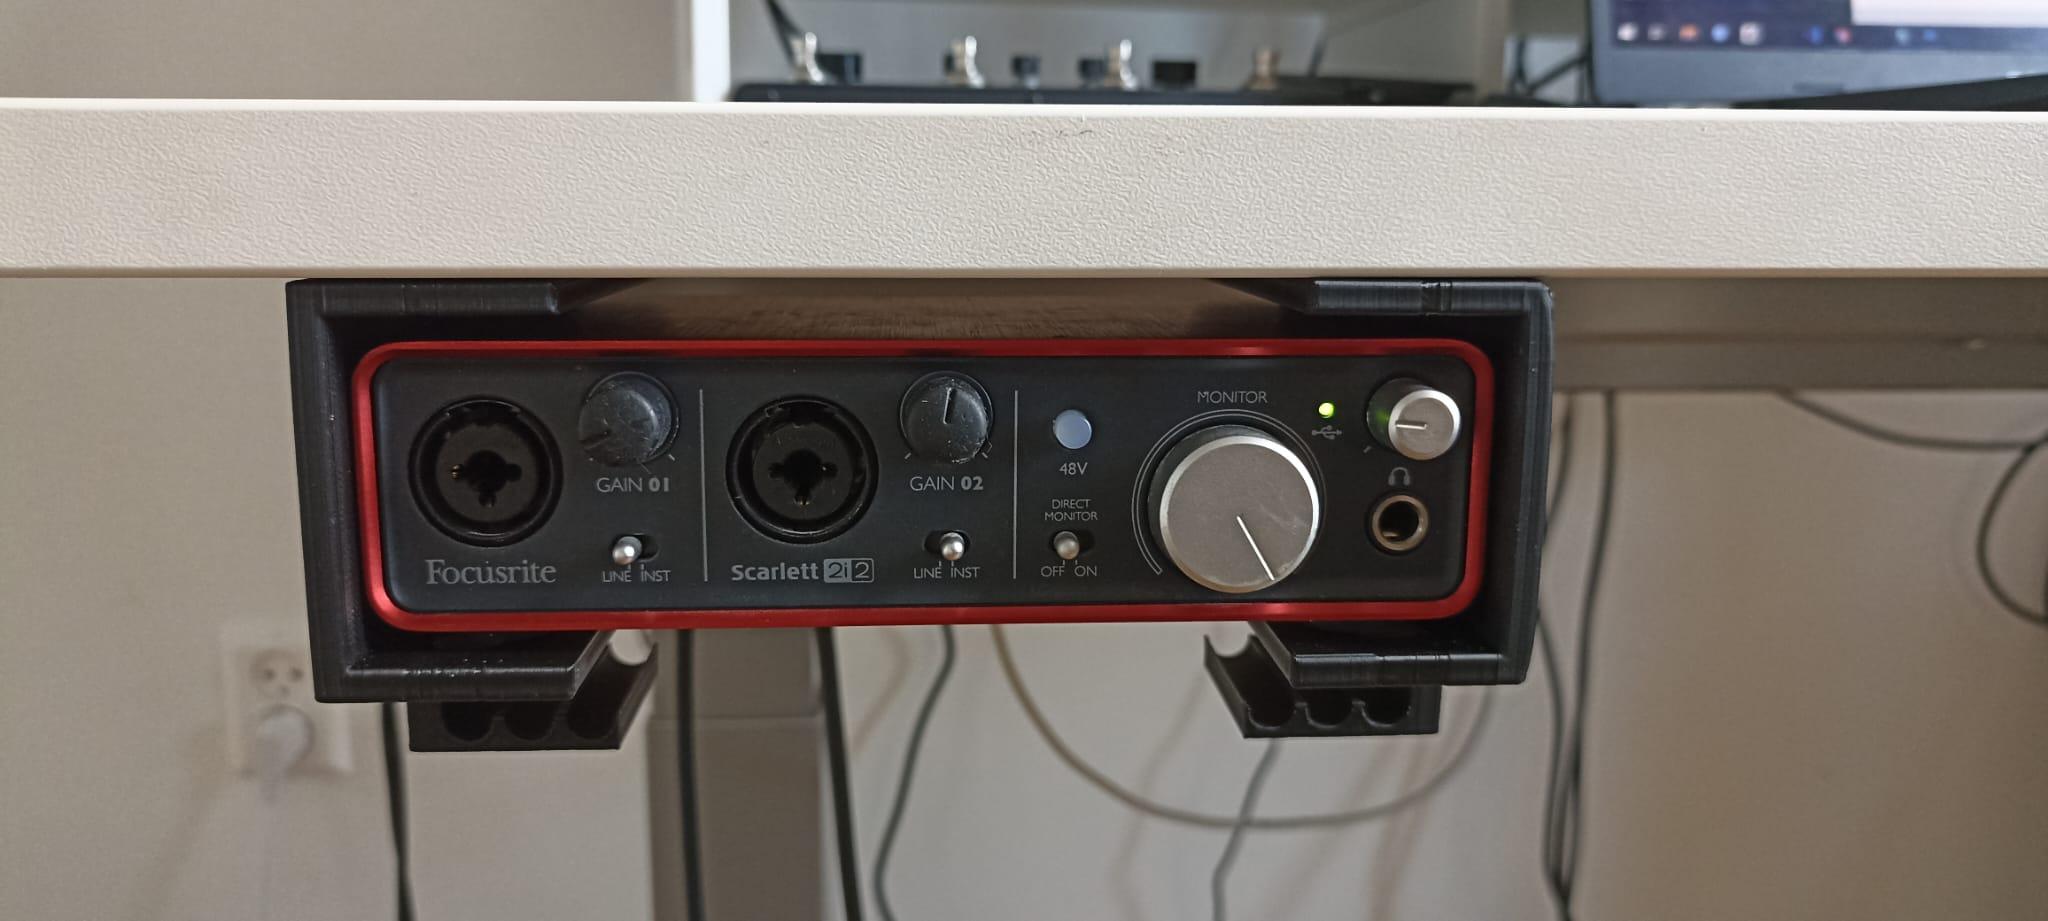 Focusrite soundboard desk holder 3d model